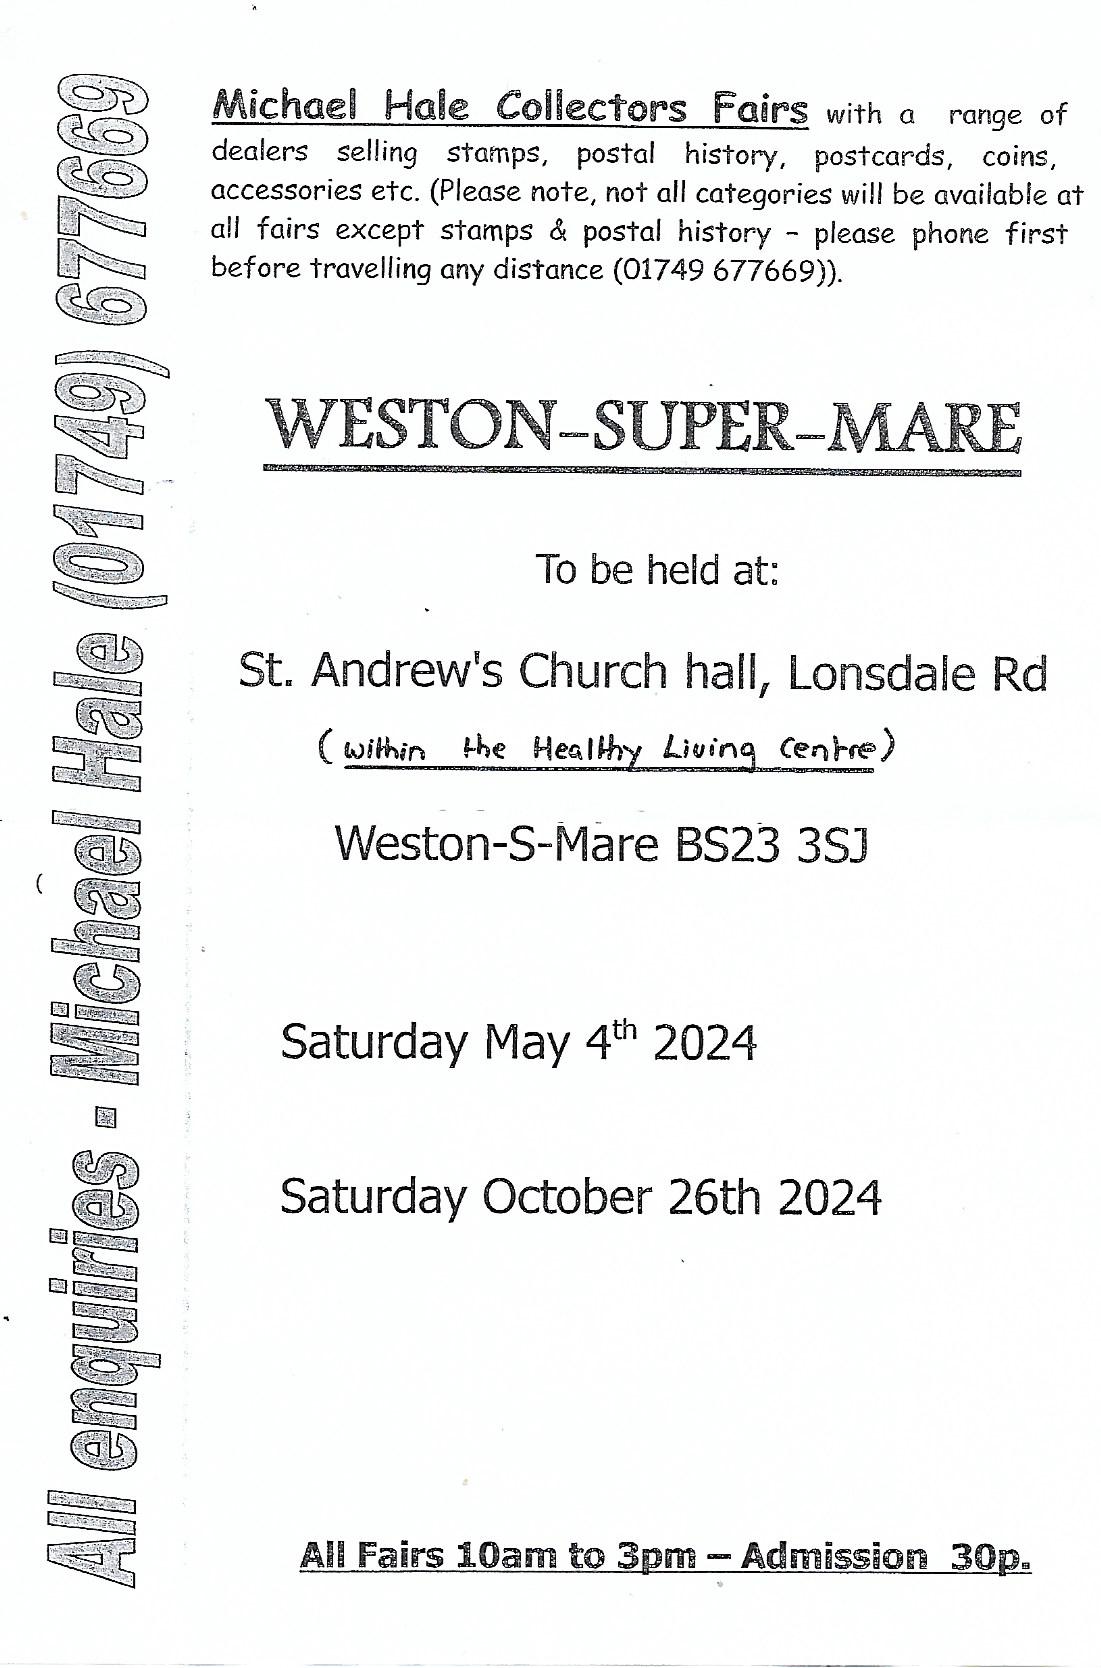 leaflet image